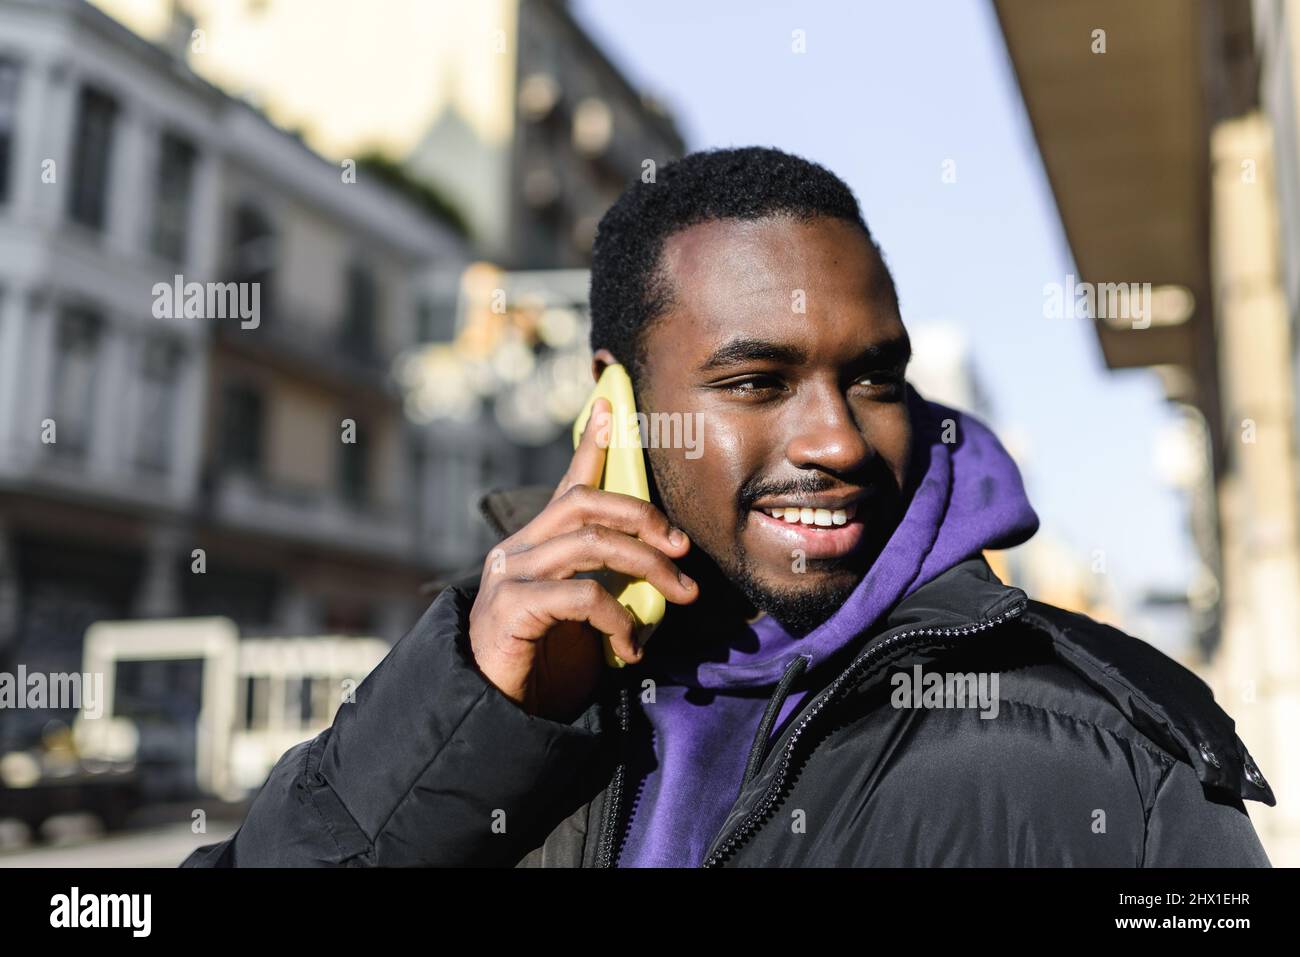 Alegre hombre afroamericano con capucha y ropa exterior sonriendo y mirando hacia fuera mientras responde a una llamada telefónica sobre un fondo borroso de la calle de la ciudad Foto de stock